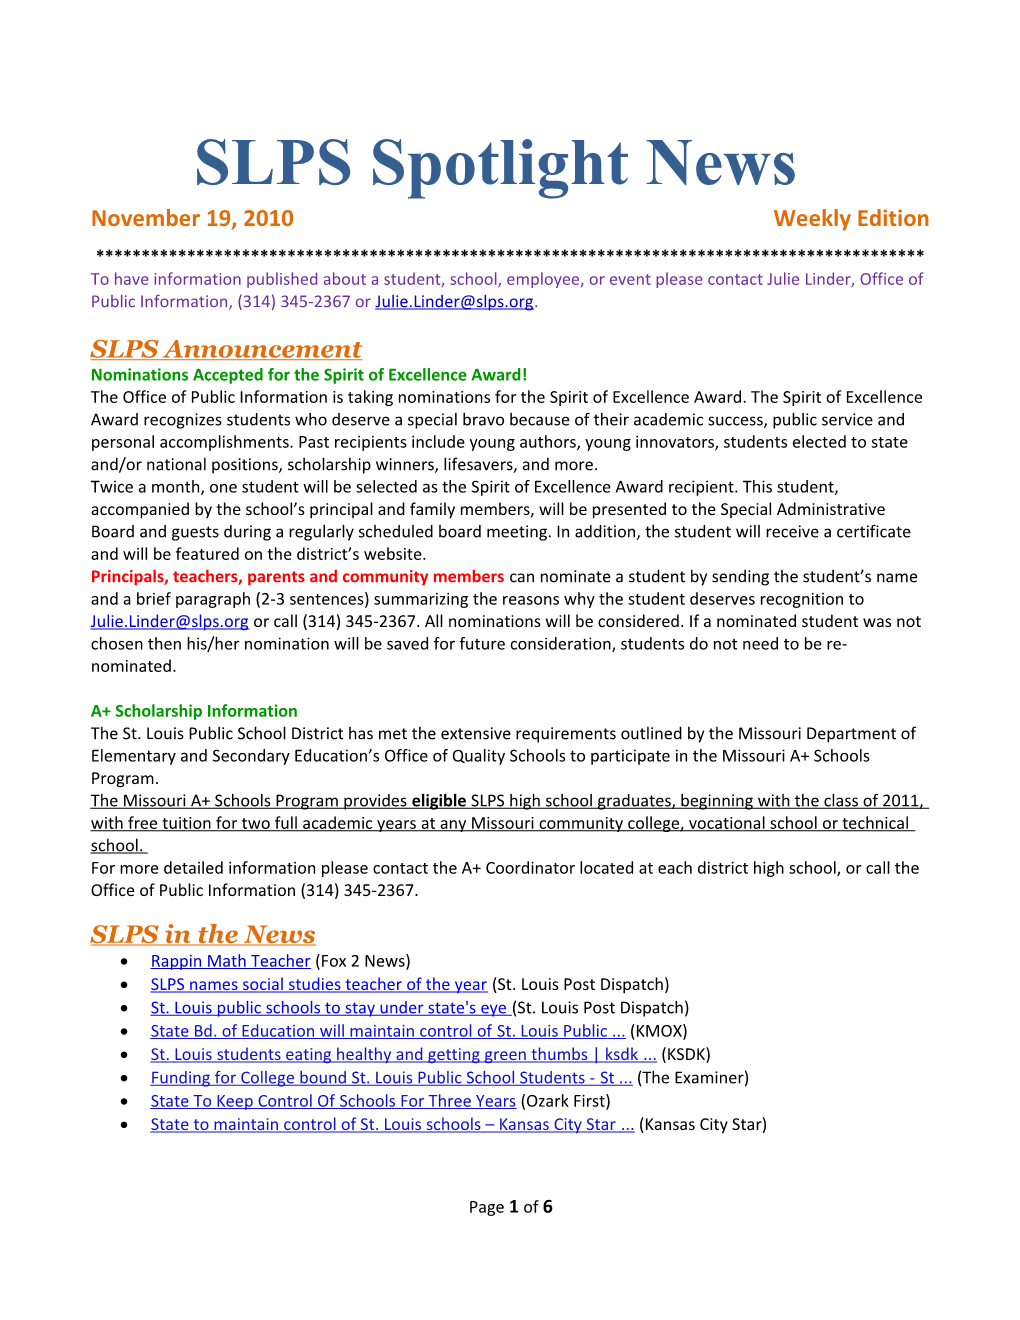 SLPS Spotlight News s1